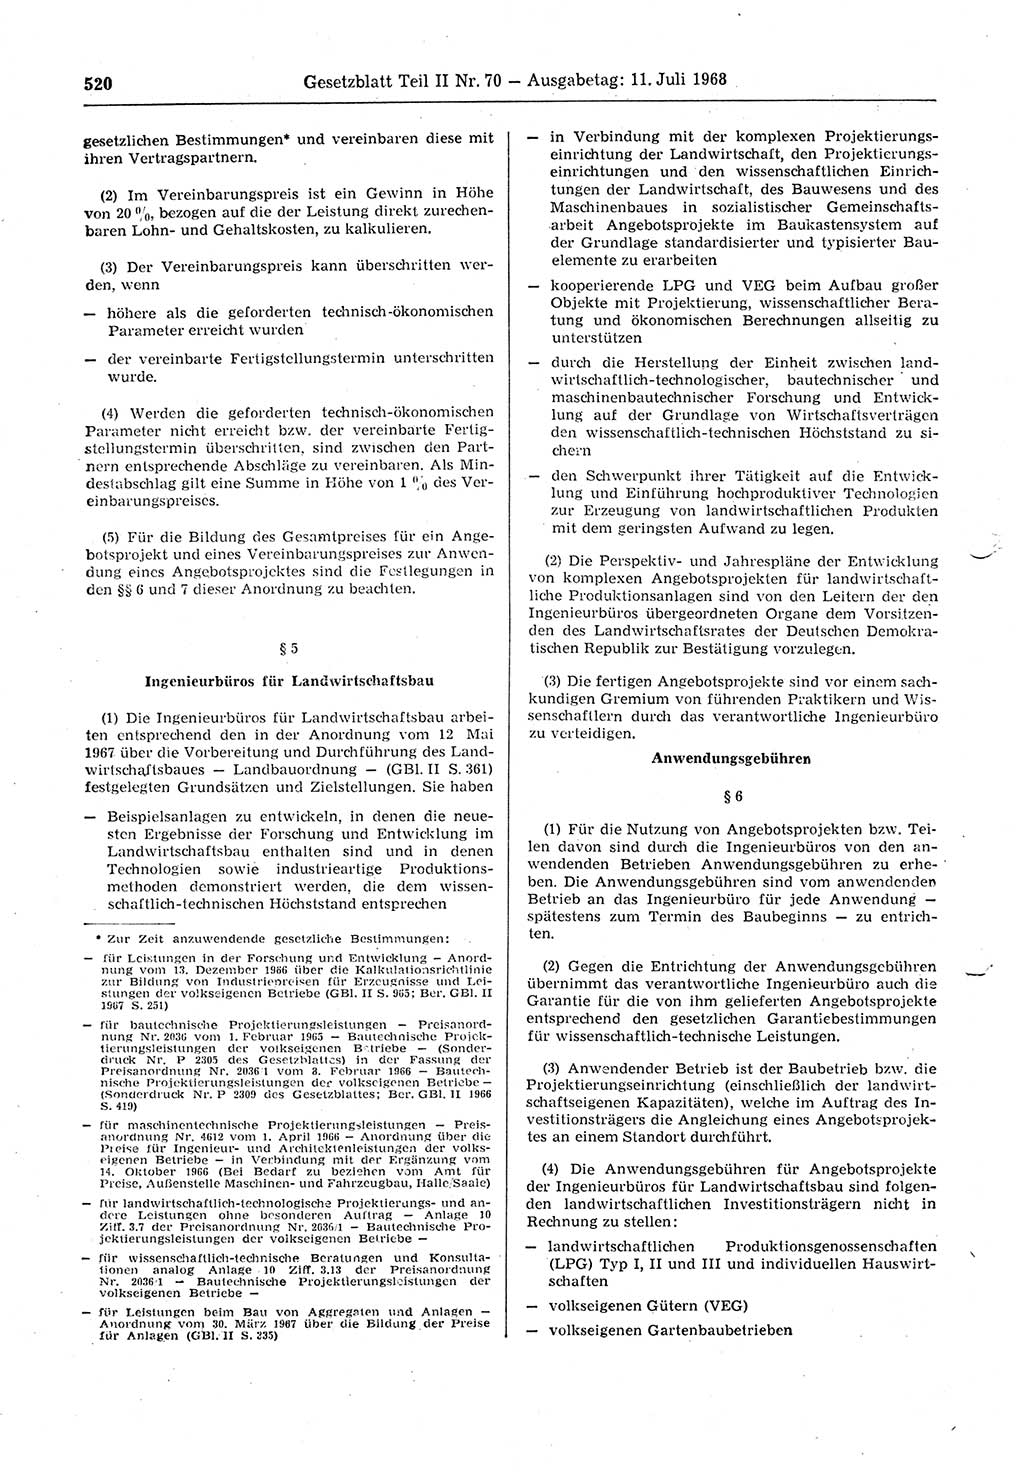 Gesetzblatt (GBl.) der Deutschen Demokratischen Republik (DDR) Teil ⅠⅠ 1968, Seite 520 (GBl. DDR ⅠⅠ 1968, S. 520)